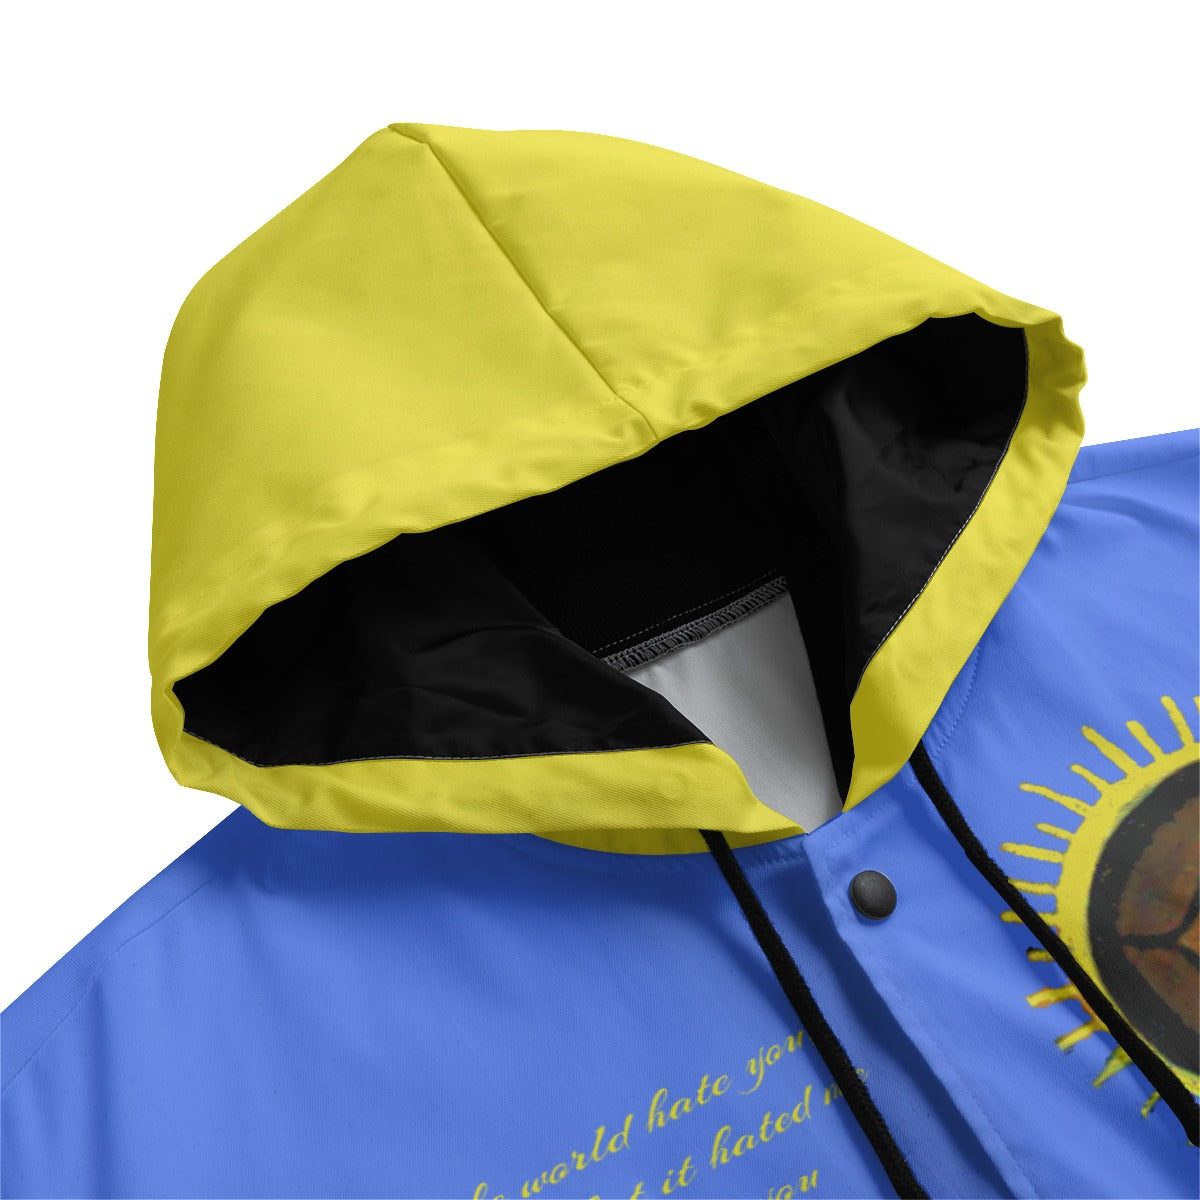 Humble Hebrew Limited Black Men's Varsity Jacket w/Hood